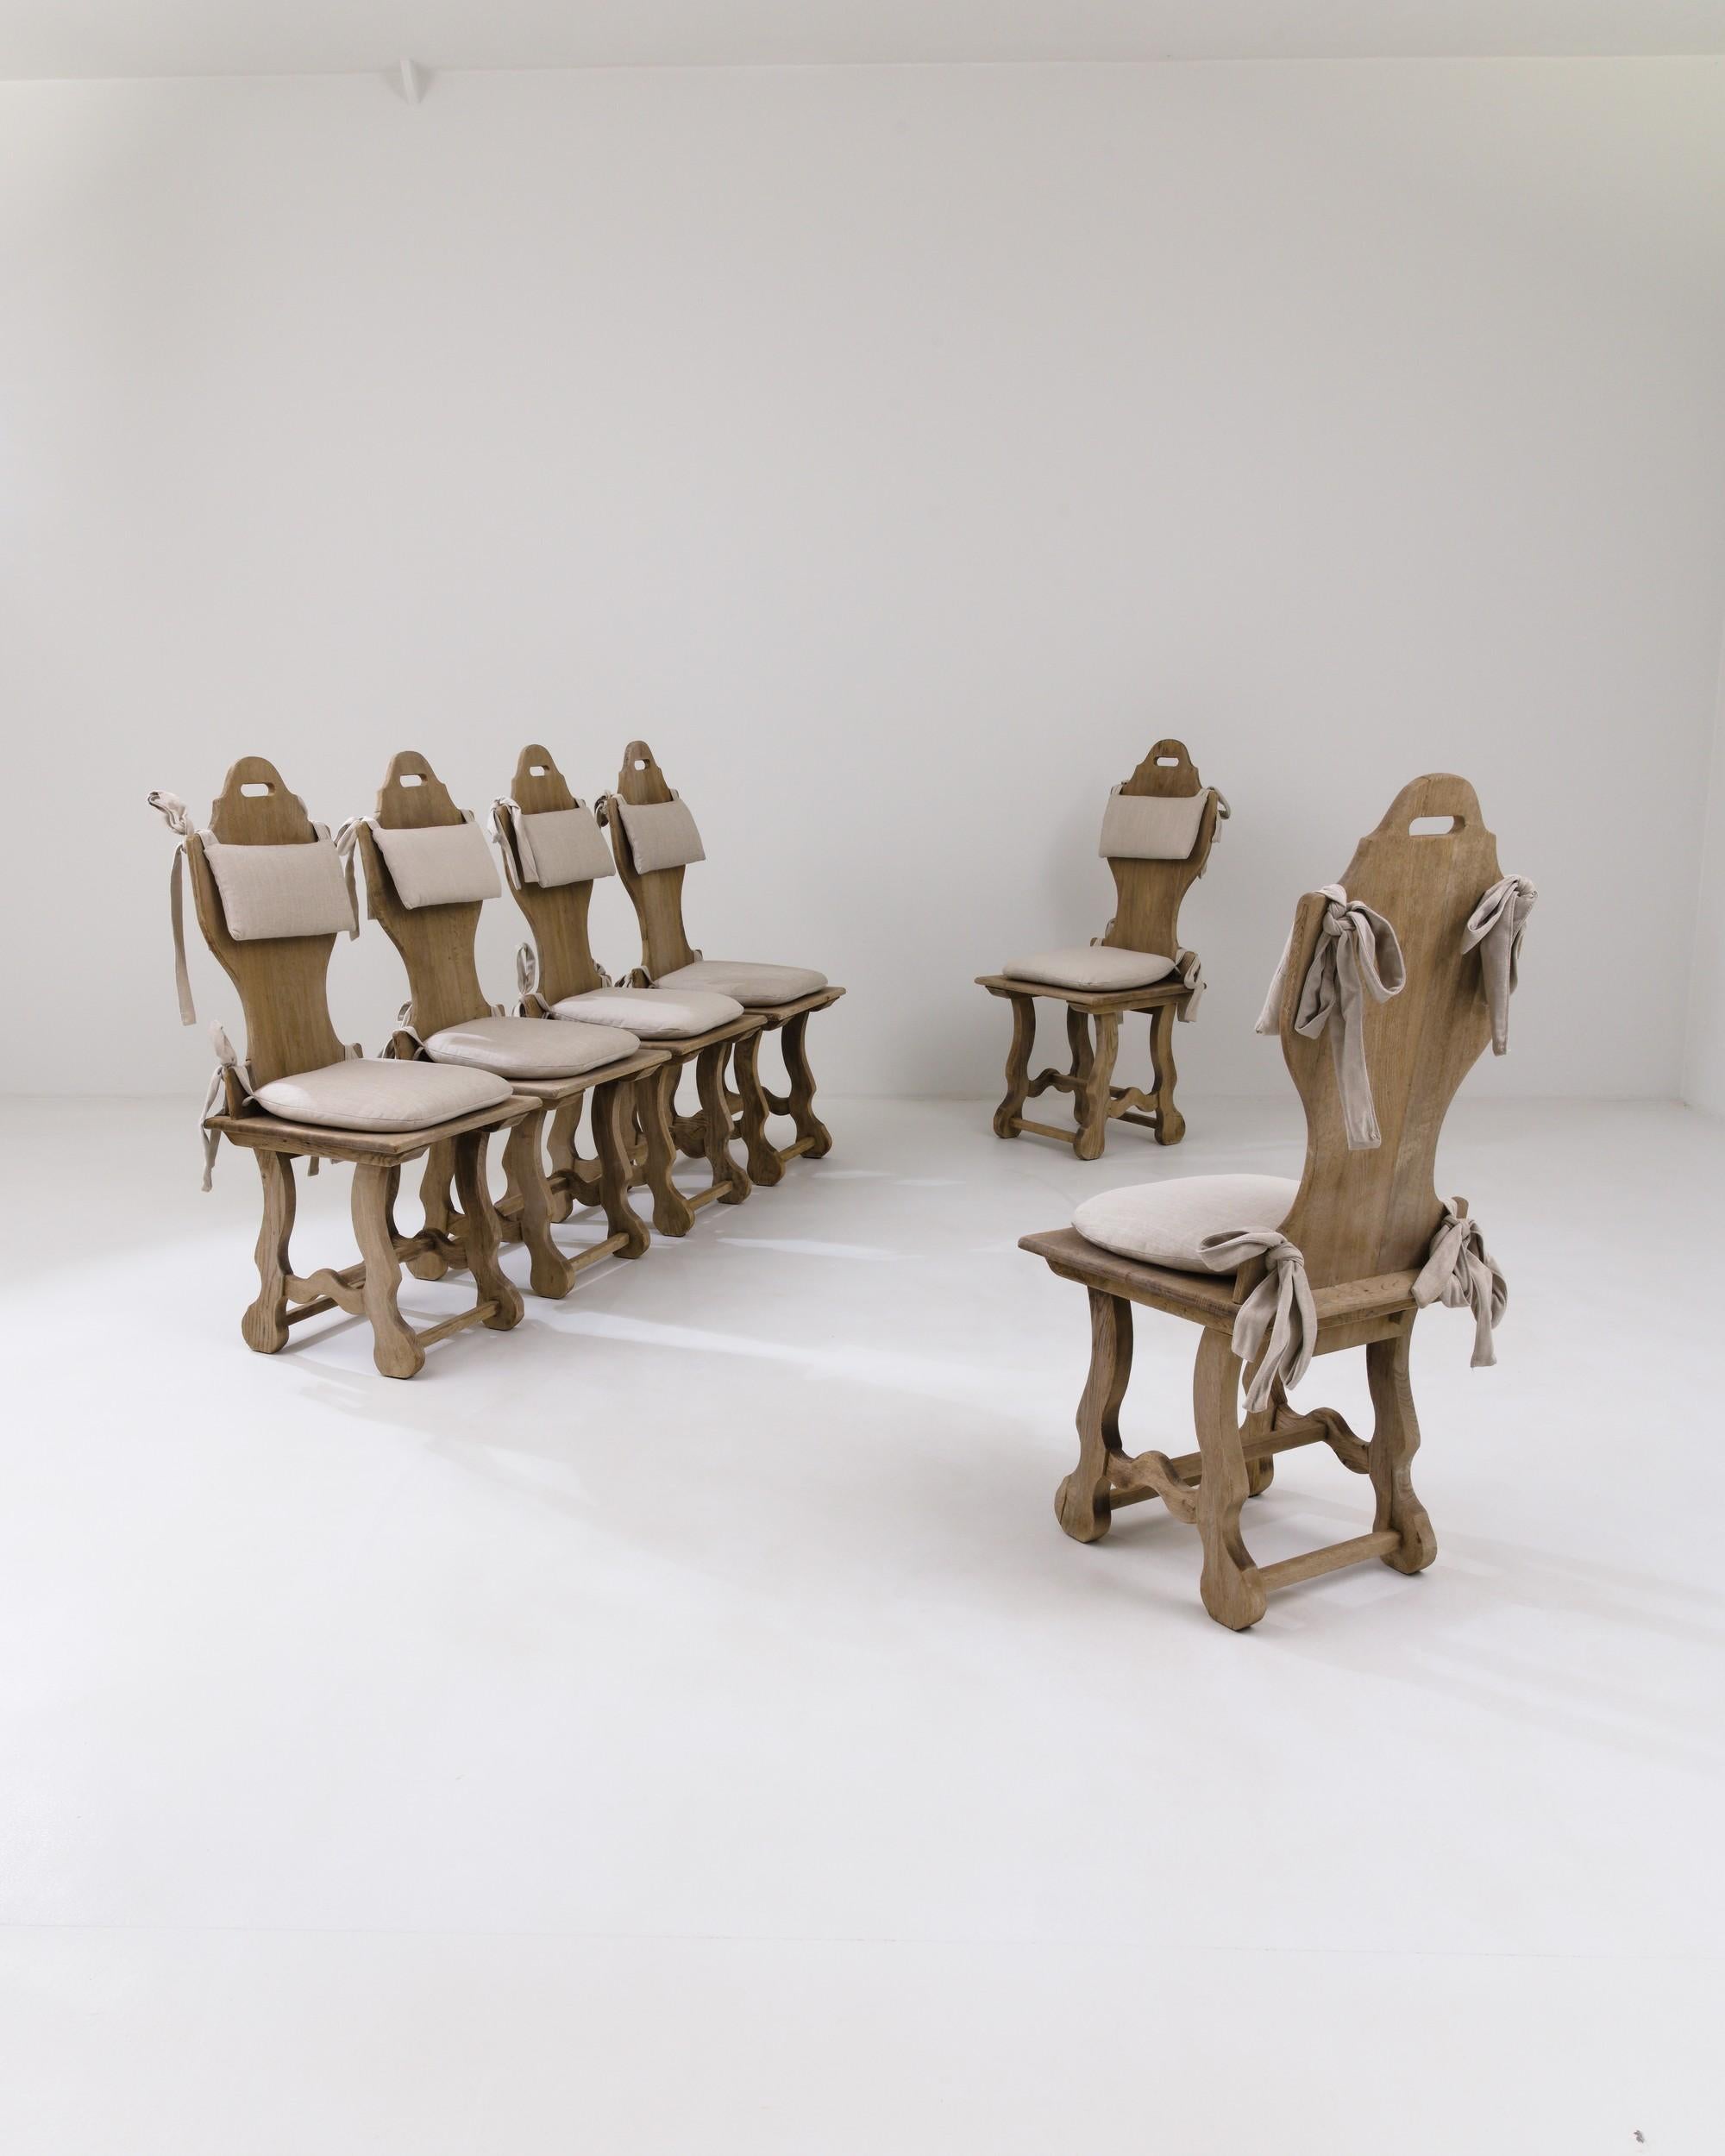 Ensemble de chaises de salle à manger vintage en bois avec coussins d'assise et de dossier, fabriquées en Belgique au 20e siècle. Légères et aérées, mais solidement construites, ces chaises de salle à manger aux formes curieuses et au charme